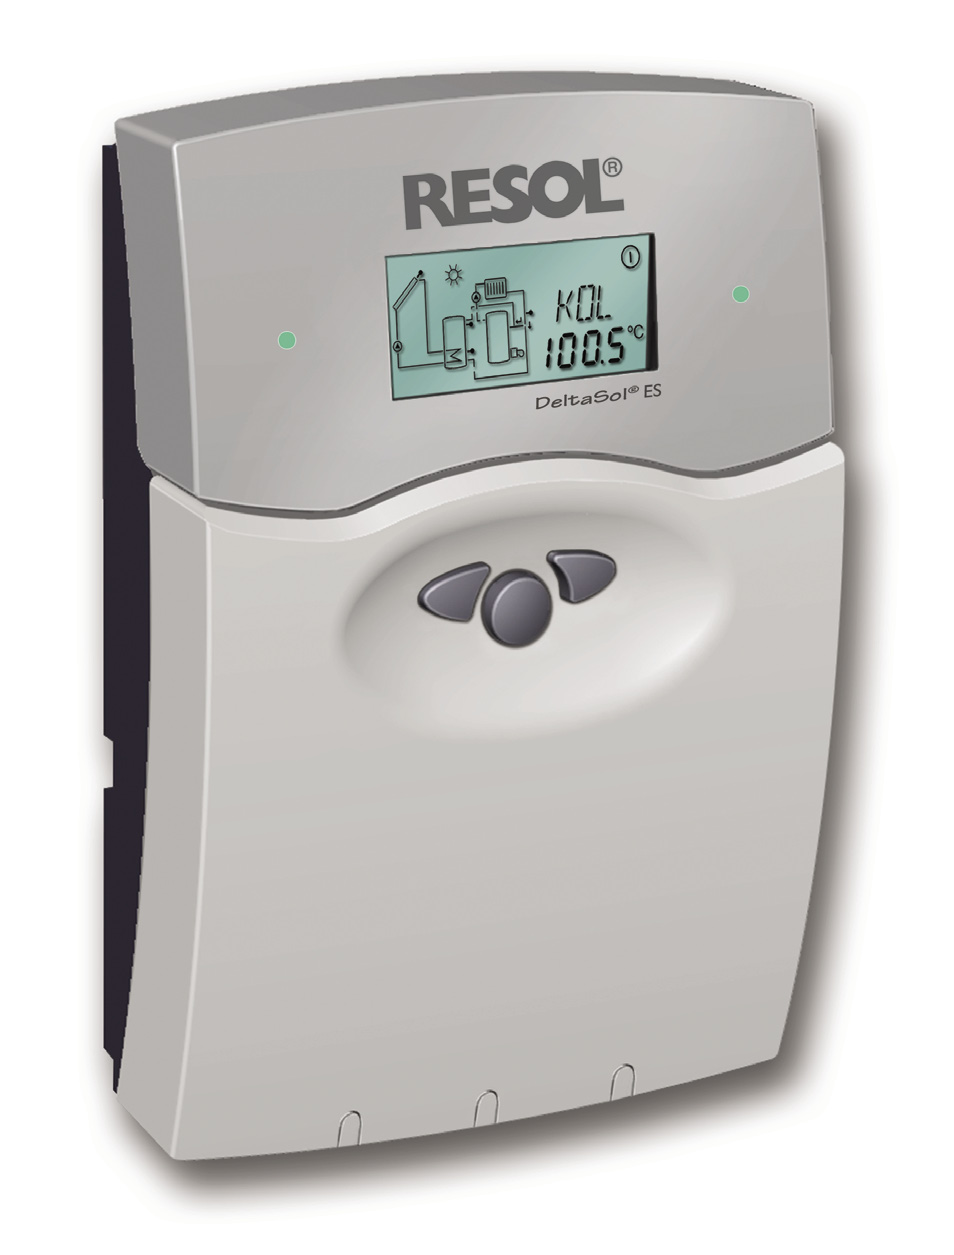 RESOL DeltaSol ES Felszerelés Bekötés Kezelés Hibakeresés Rendszerpéldák DeltaSol ES *48001850* 48001850 Köszönjük, hogy ezt a RESOL terméket